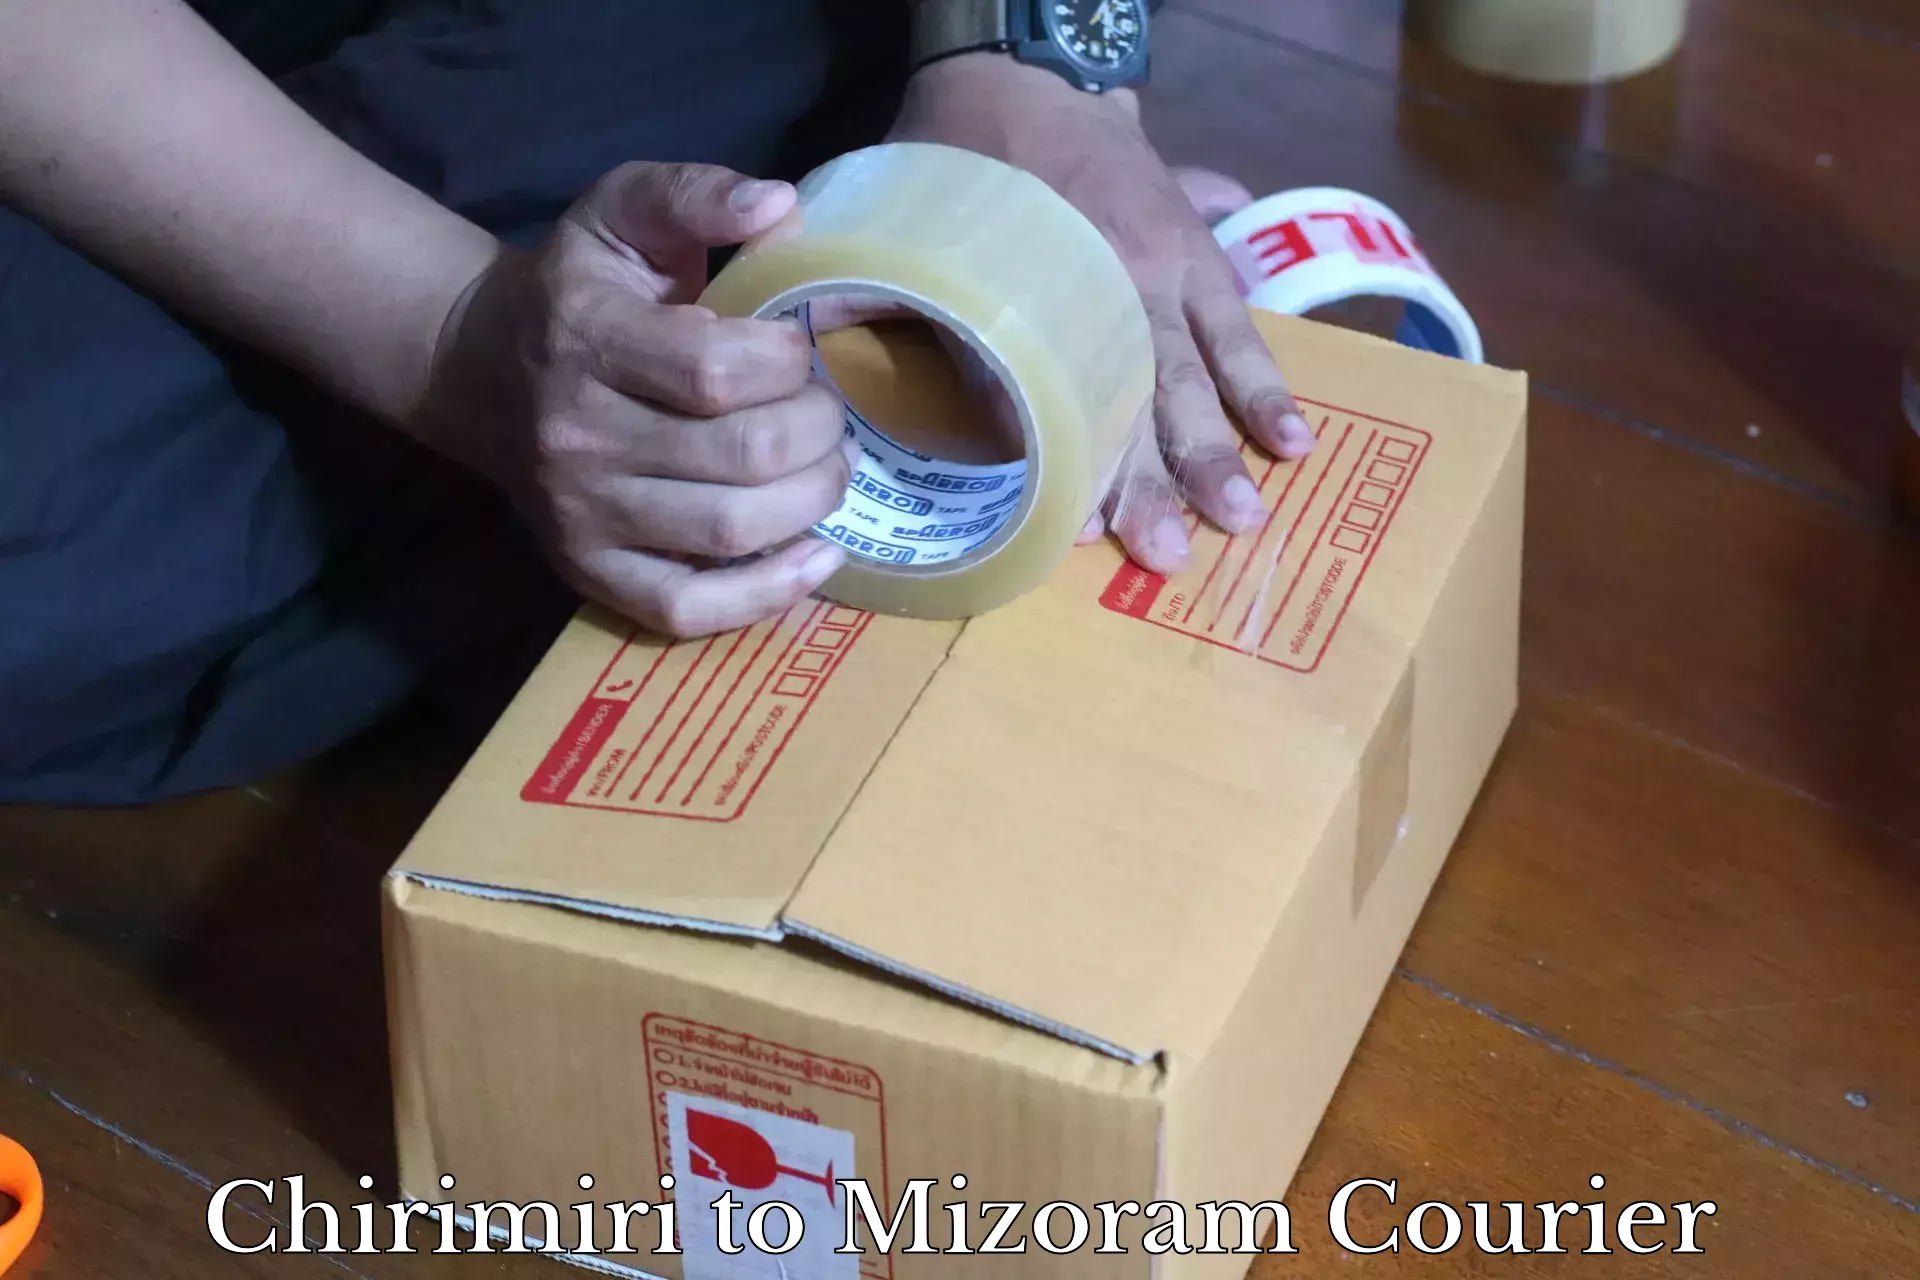 Local delivery service Chirimiri to Mizoram